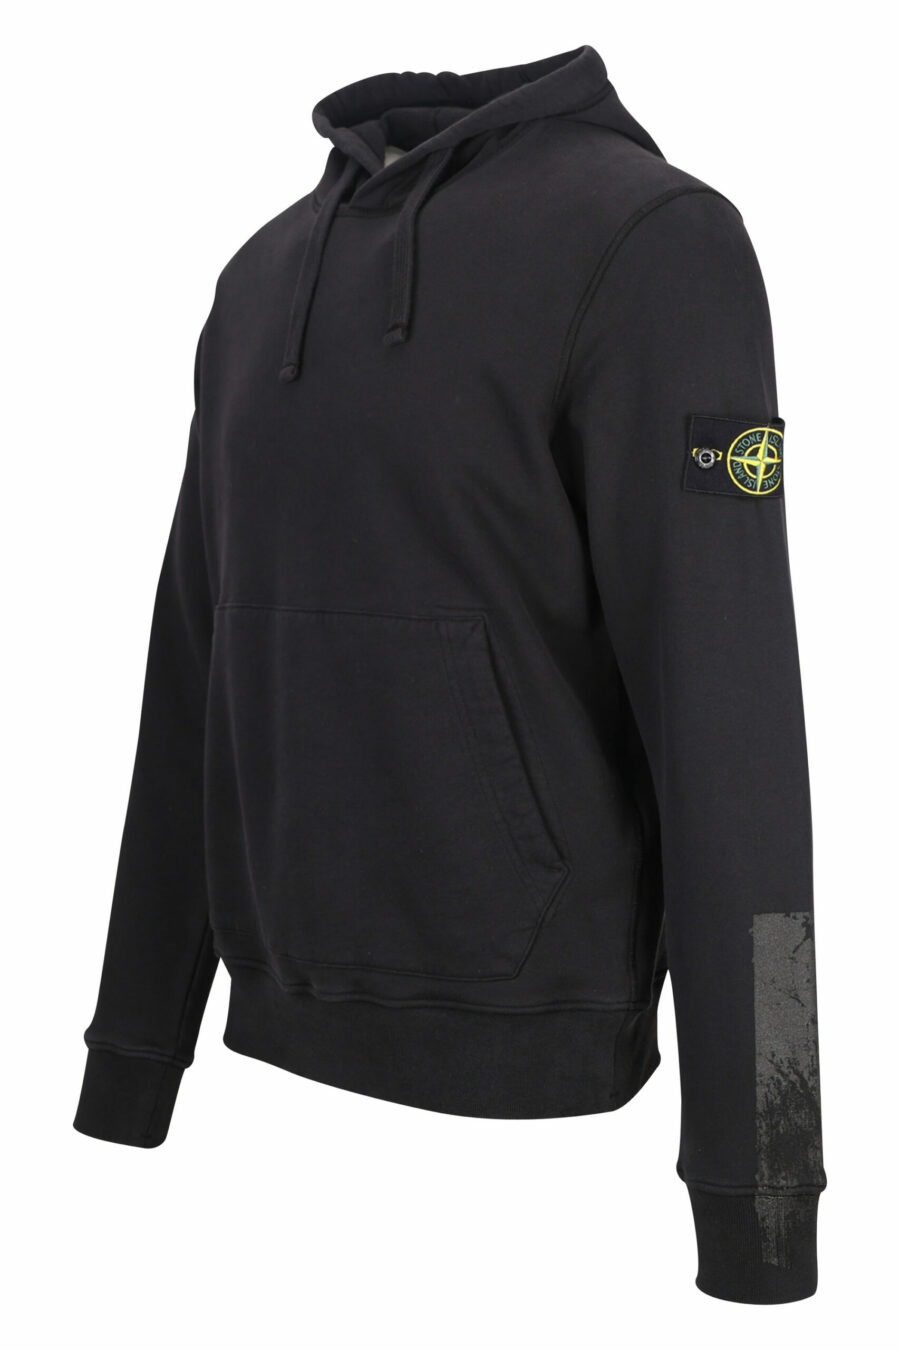 Schwarzes Kapuzensweatshirt mit seitlichem Logo - 8052572736230 1 skaliert